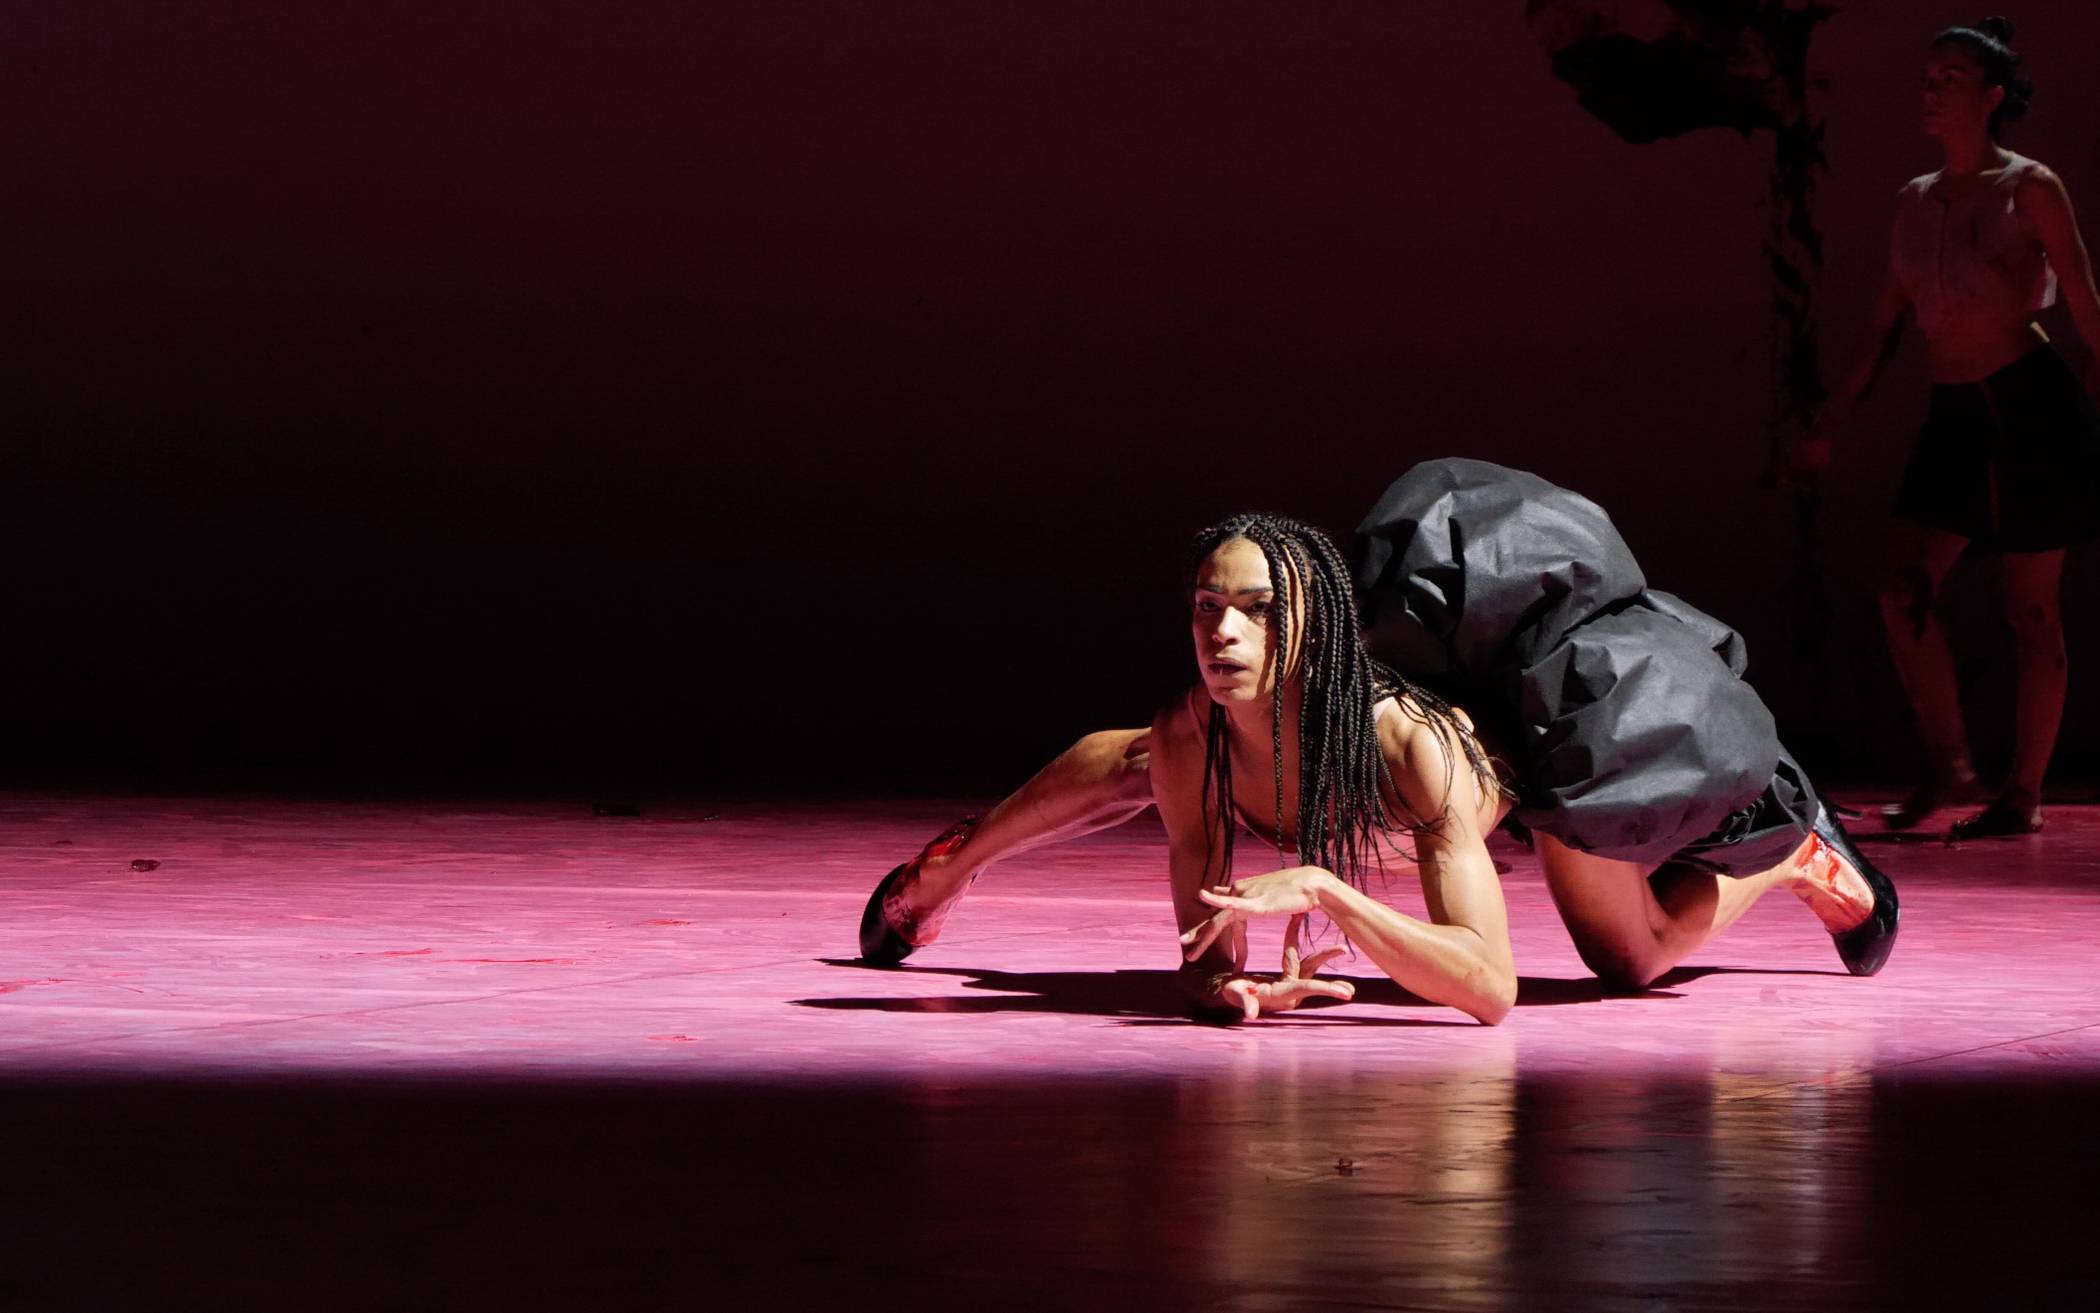  Naomi Brito vom Wuppertaler Tanztheater in der Choreographie "Ectopia" von Richard Siegal im Bühnenbild "Shooting into the Corner" von Anish Kapoor. 